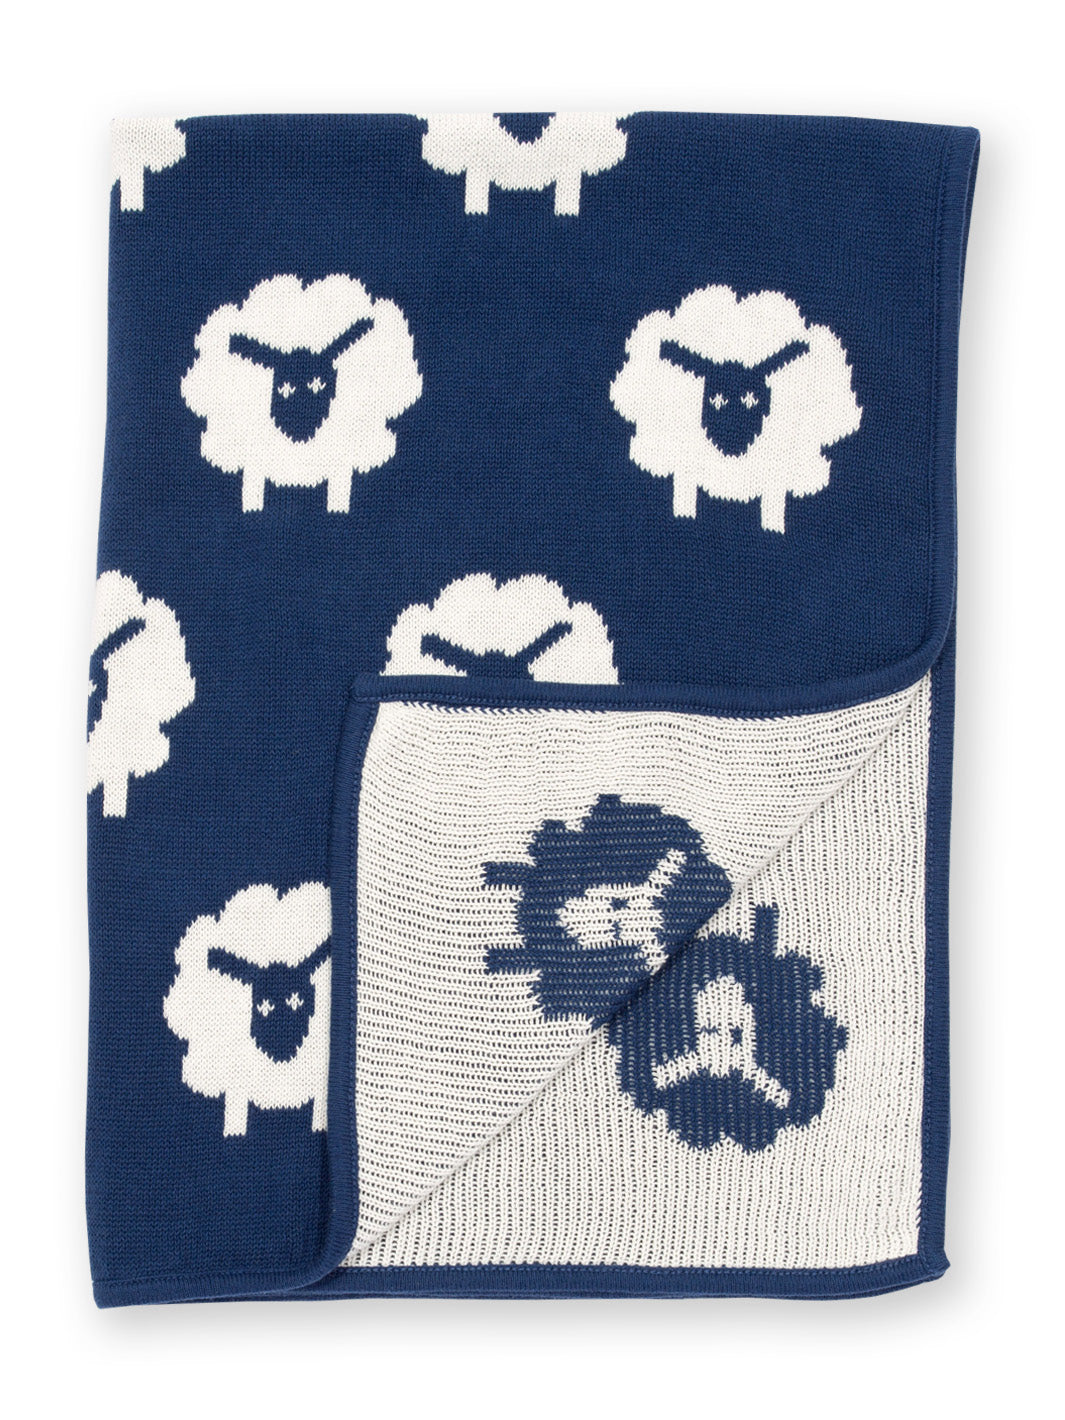 Kite Sheepy Knit Blanket